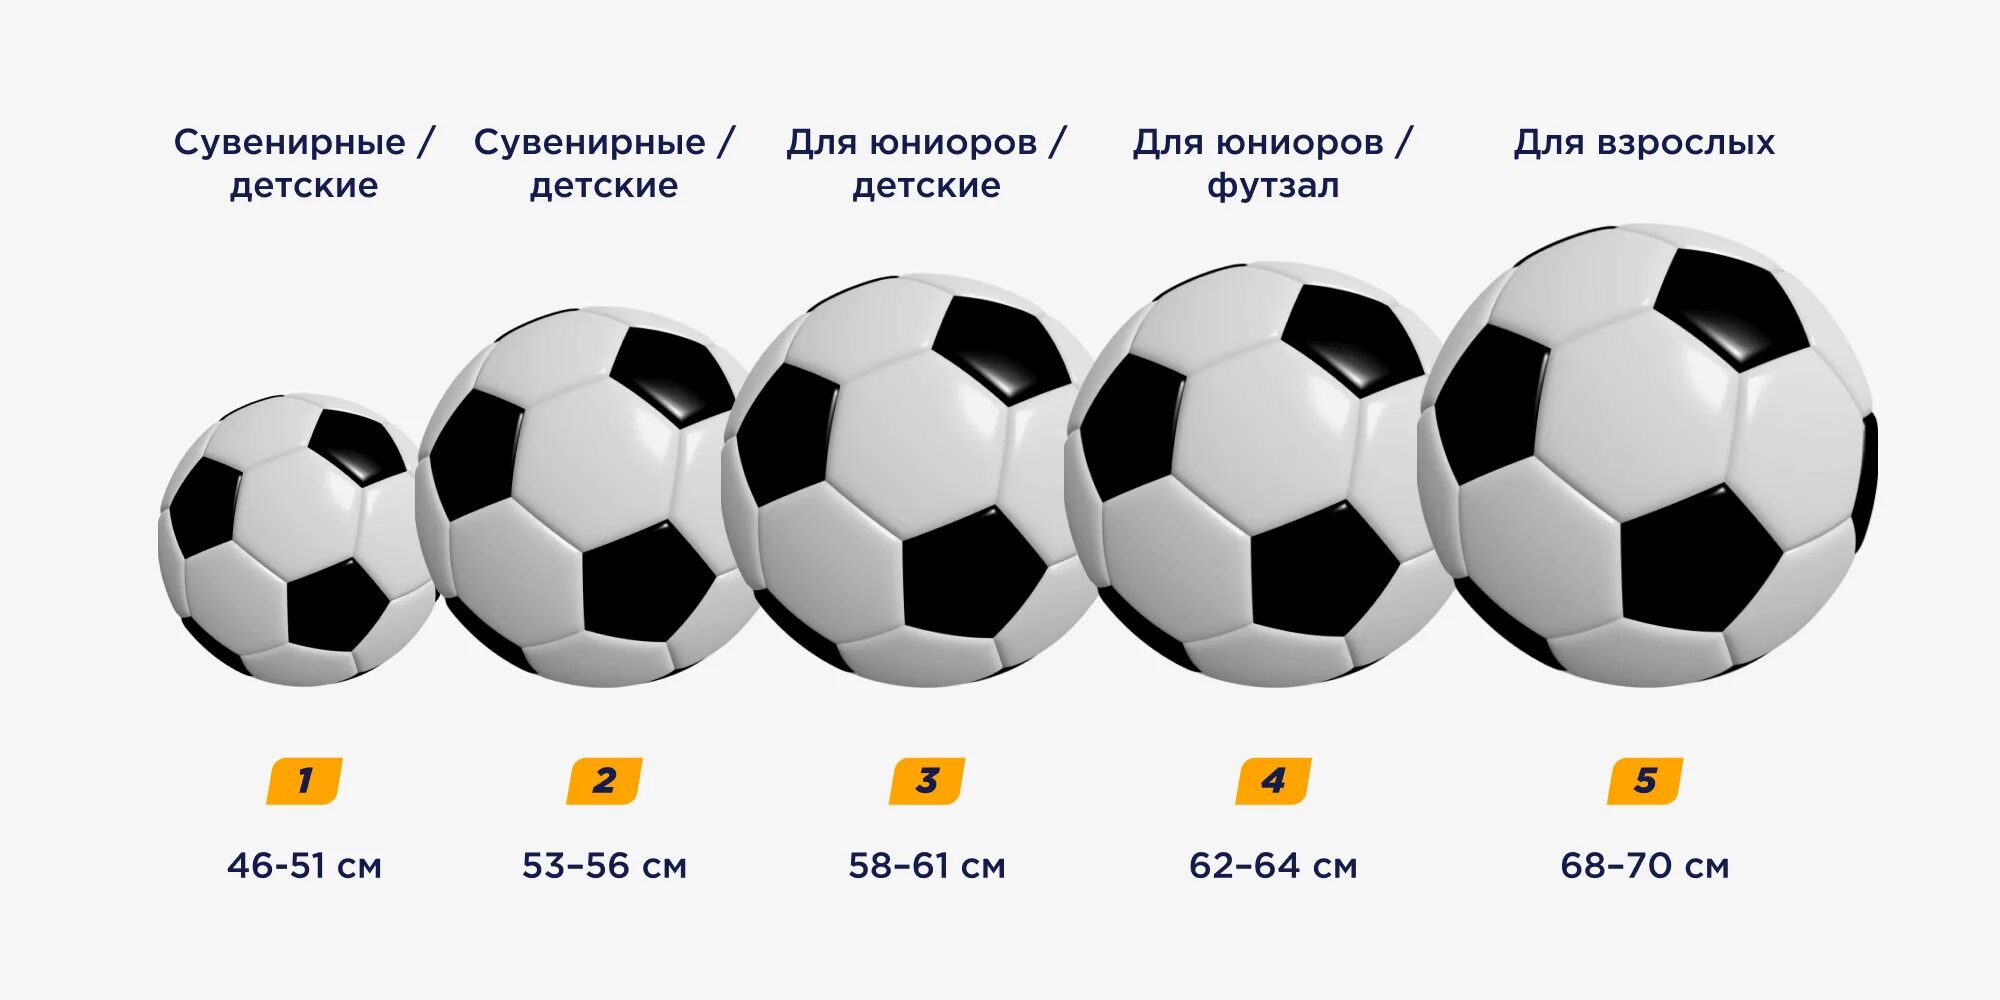 Весы мячи футбола. Мяч 5 размера диаметр. Вес футбольного мяча 4 размера. Размер футбольного мяча диаметр. Мяч футбольный размер 5 диаметр.